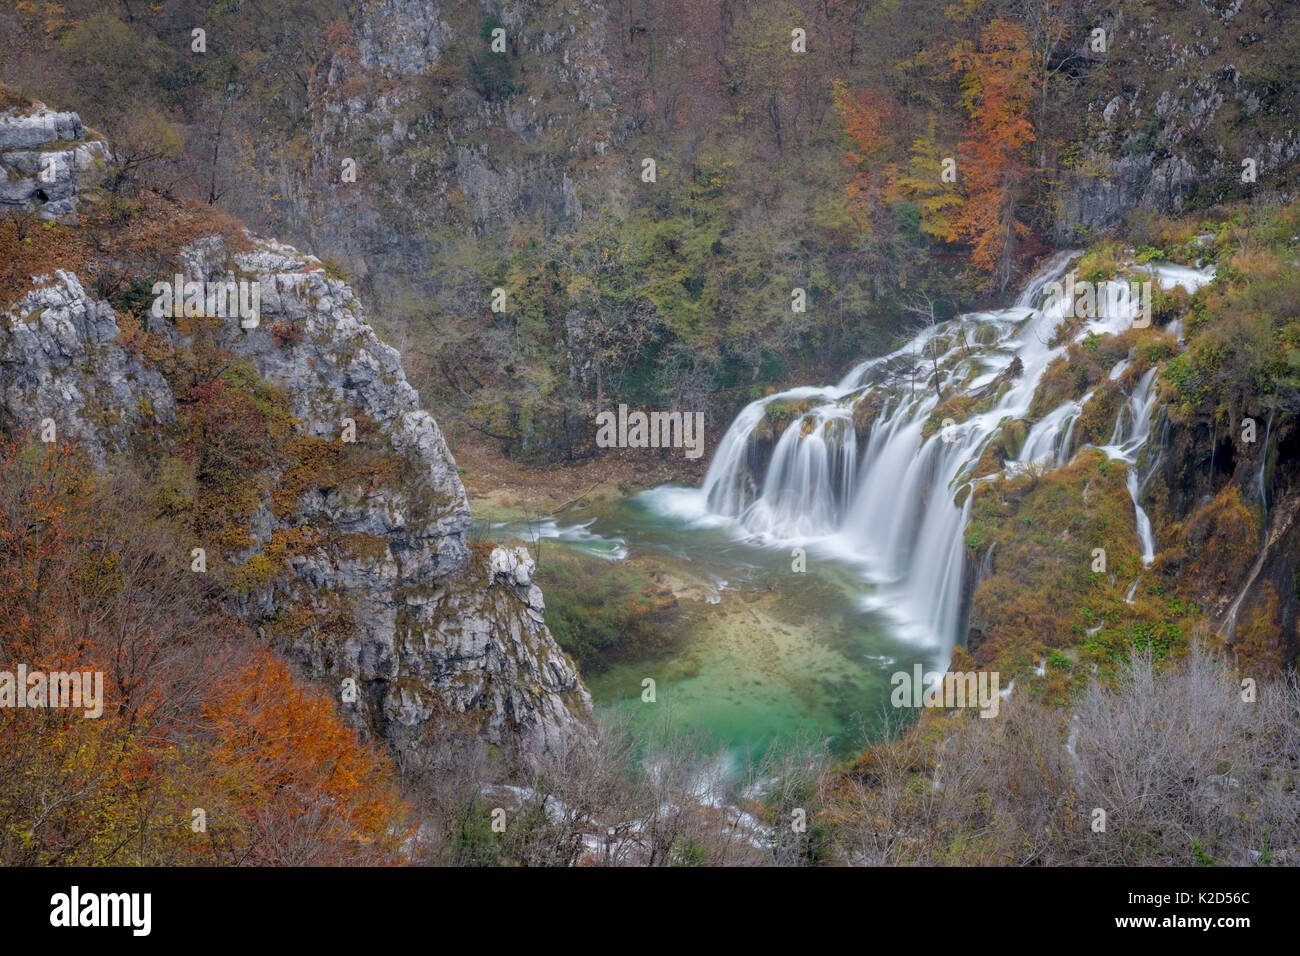 Reihe von Wasserfällen als astavci', die Kaskade zwischen Bergseen, Nationalpark Plitvicer Seen, Kroatien bekannt. November. Stockfoto